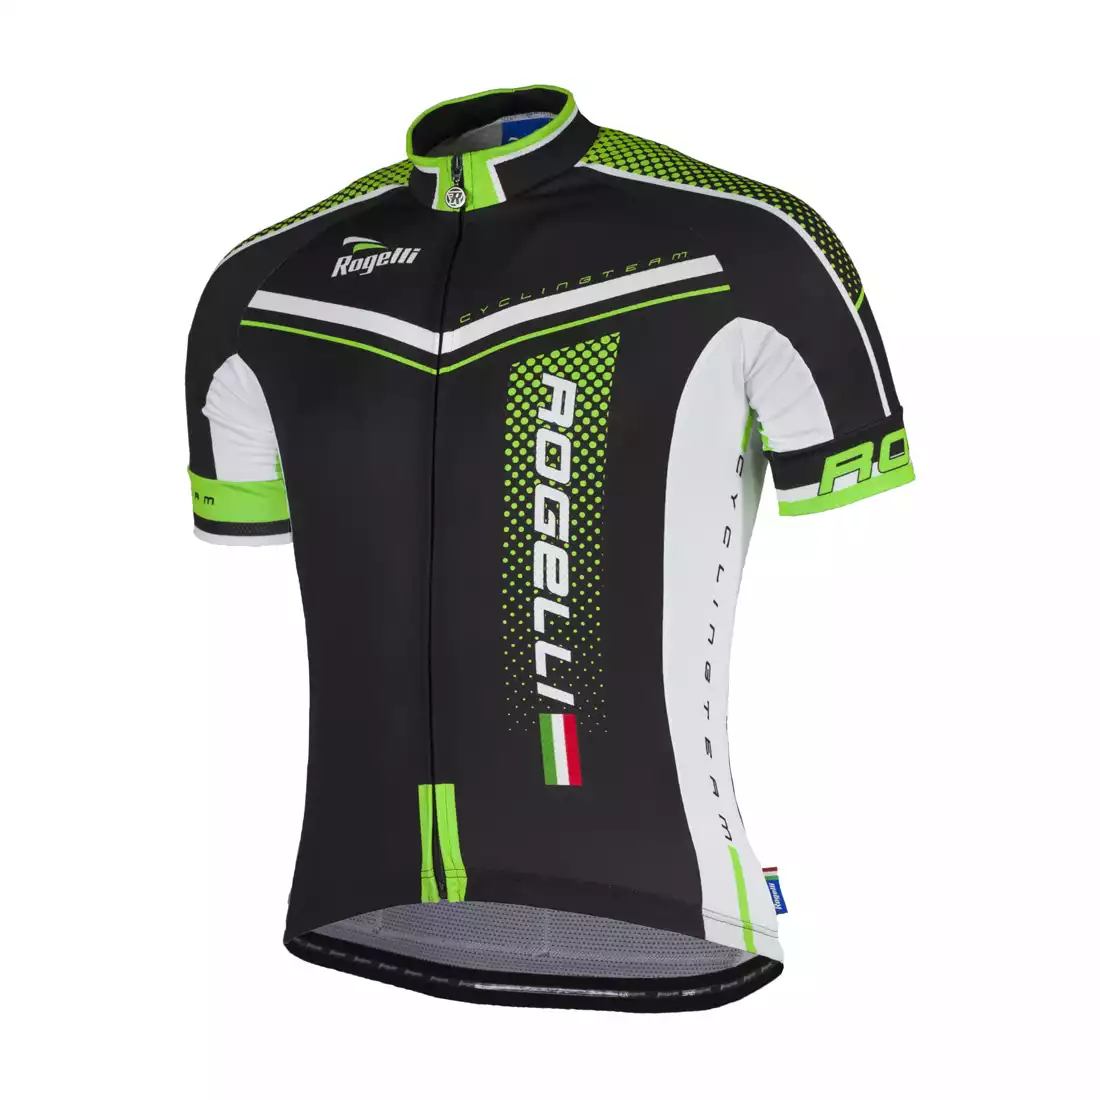 ROGELLI GARA MOSTRO - męska koszulka rowerowa 001.240, czarno-zielona